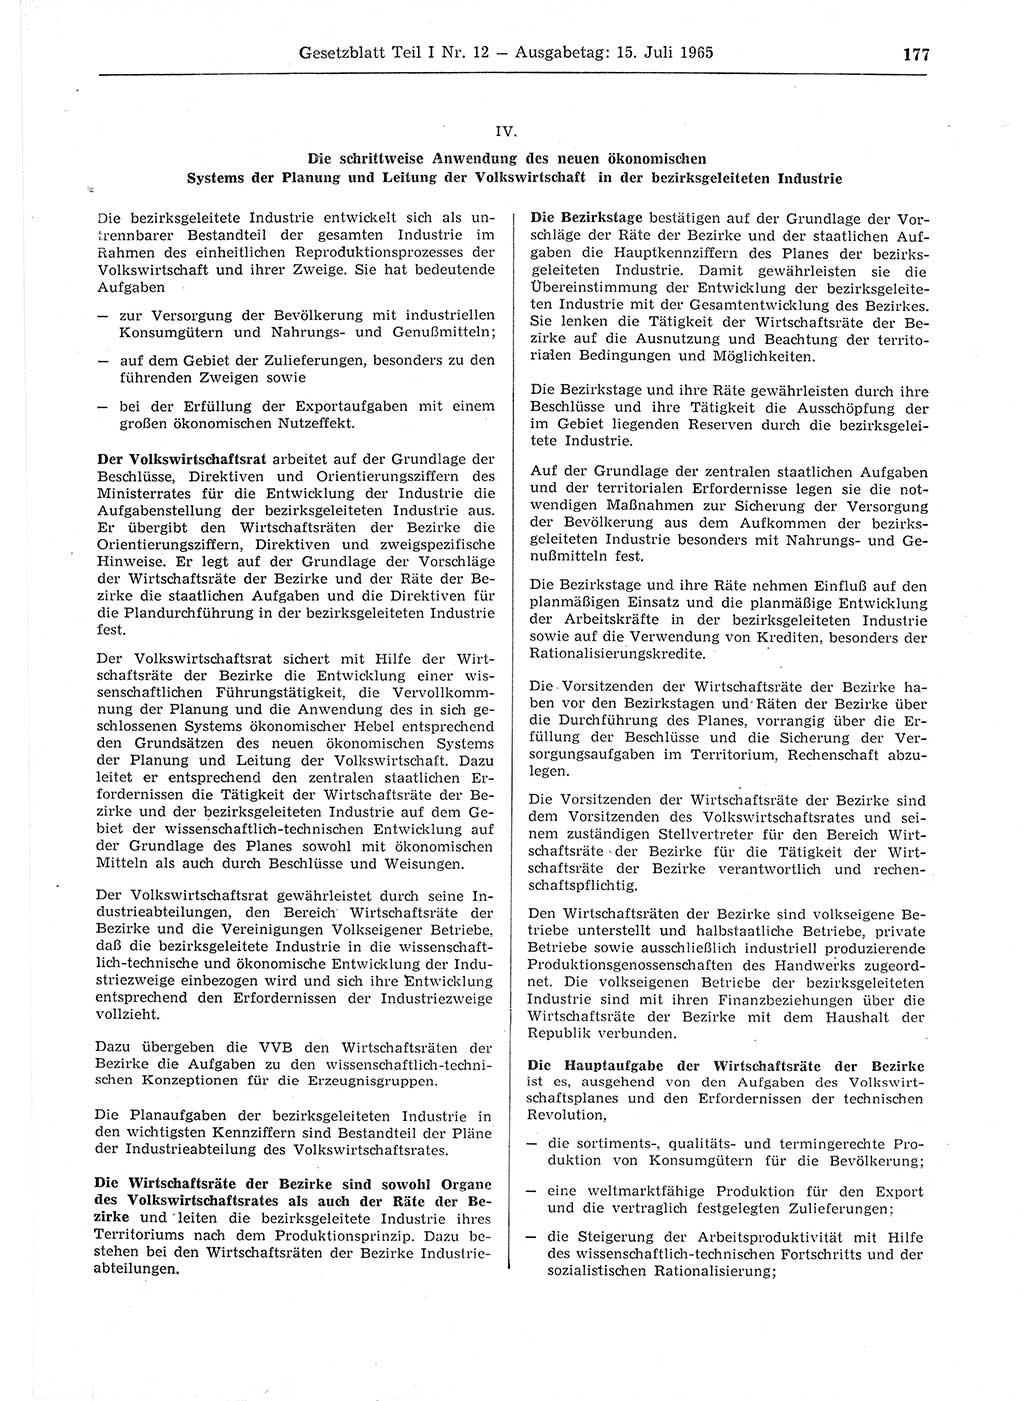 Gesetzblatt (GBl.) der Deutschen Demokratischen Republik (DDR) Teil Ⅰ 1965, Seite 177 (GBl. DDR Ⅰ 1965, S. 177)